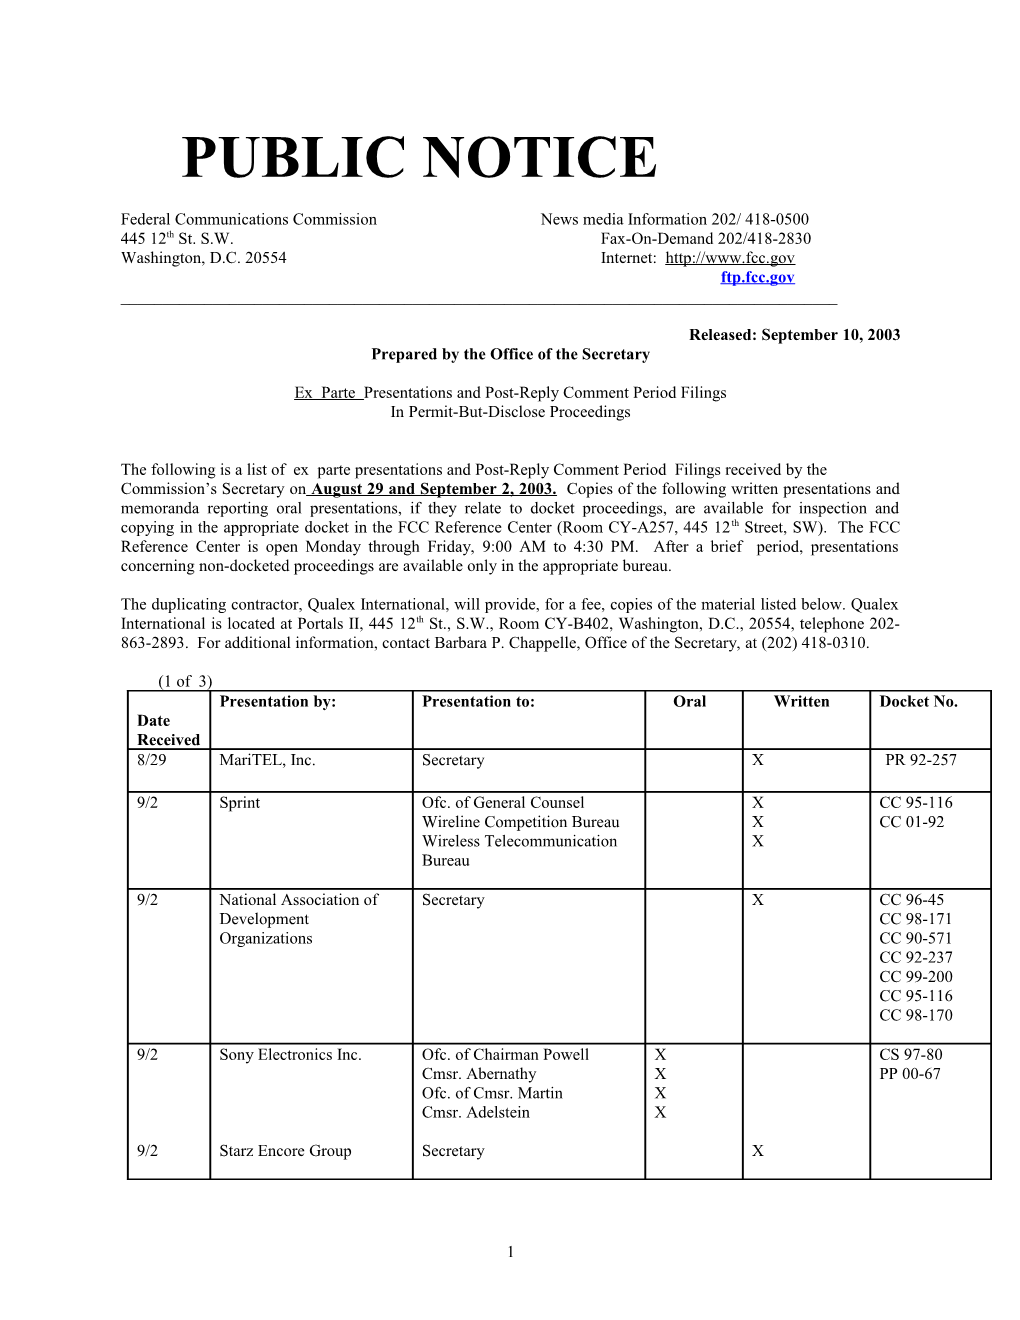 Public Notice s3